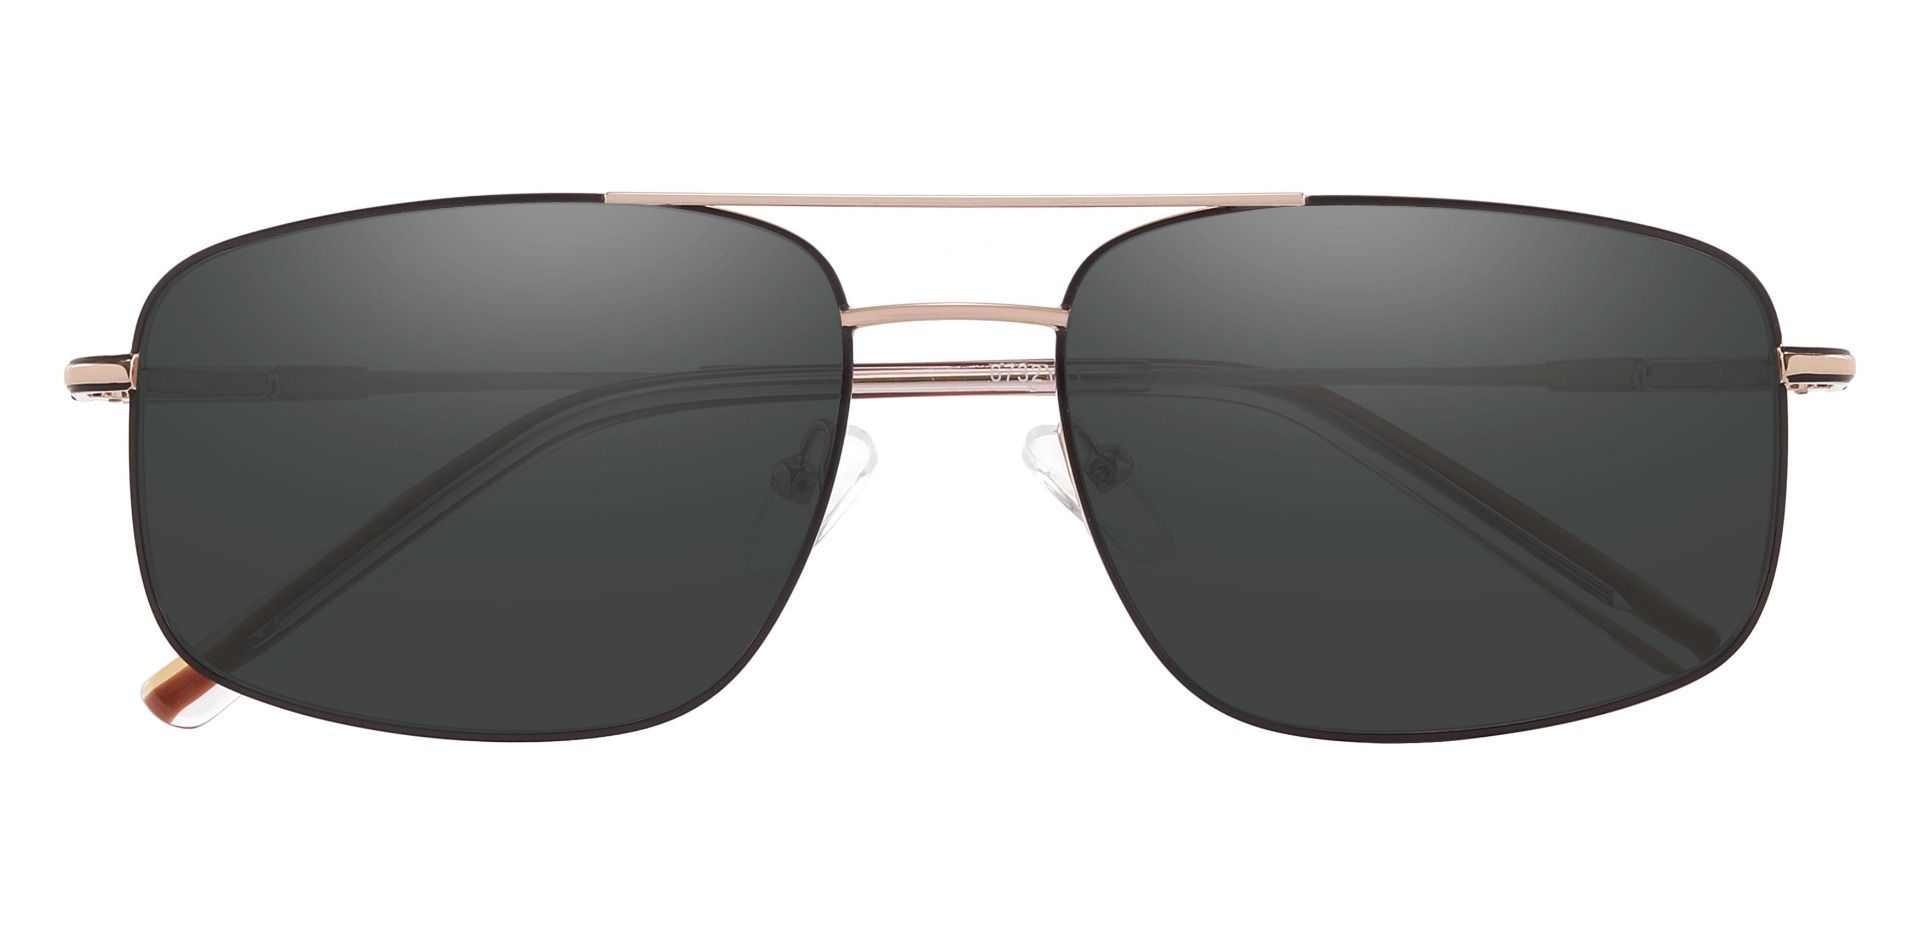 Turner Aviator Prescription Sunglasses - Gold Frame With Gray Lenses